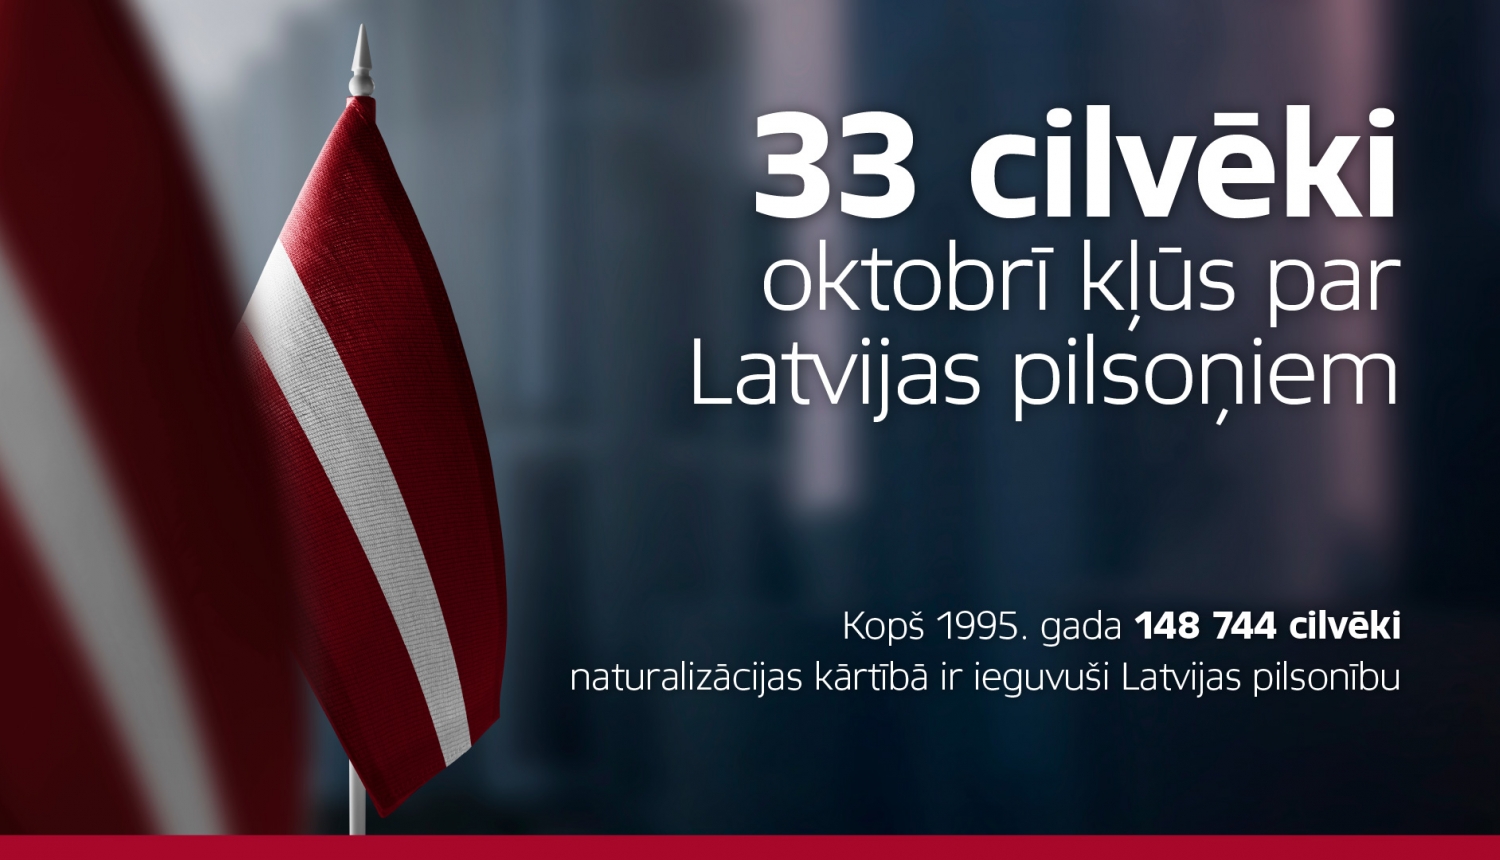 Latvijas karogs un informācija, ka 33 cilvēki oktobrī kļūs par Latvijas pilsoņiem